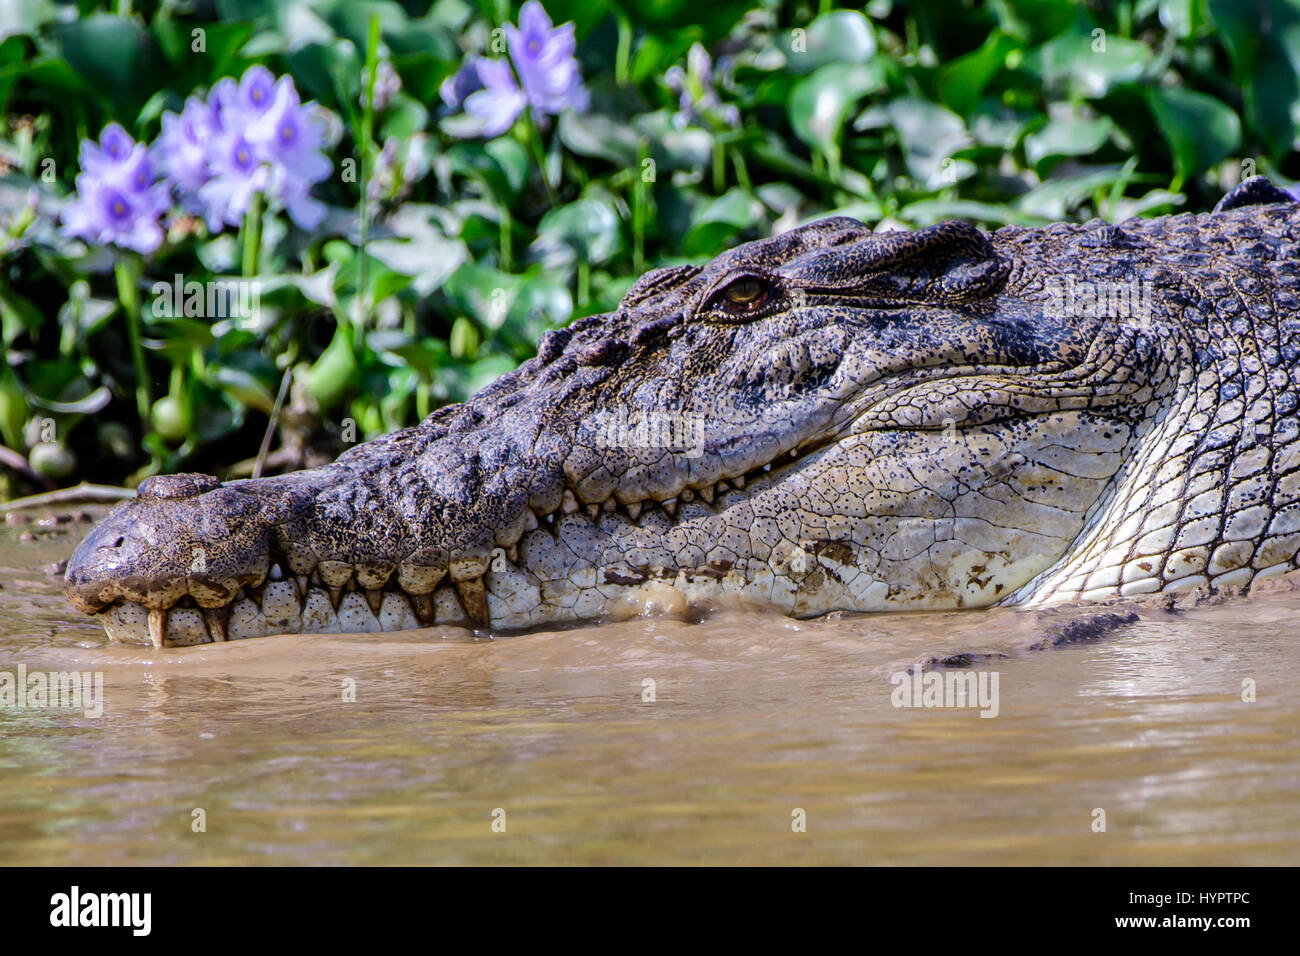 Cerca de la cara de un cocodrilo de agua dulce Foto de stock